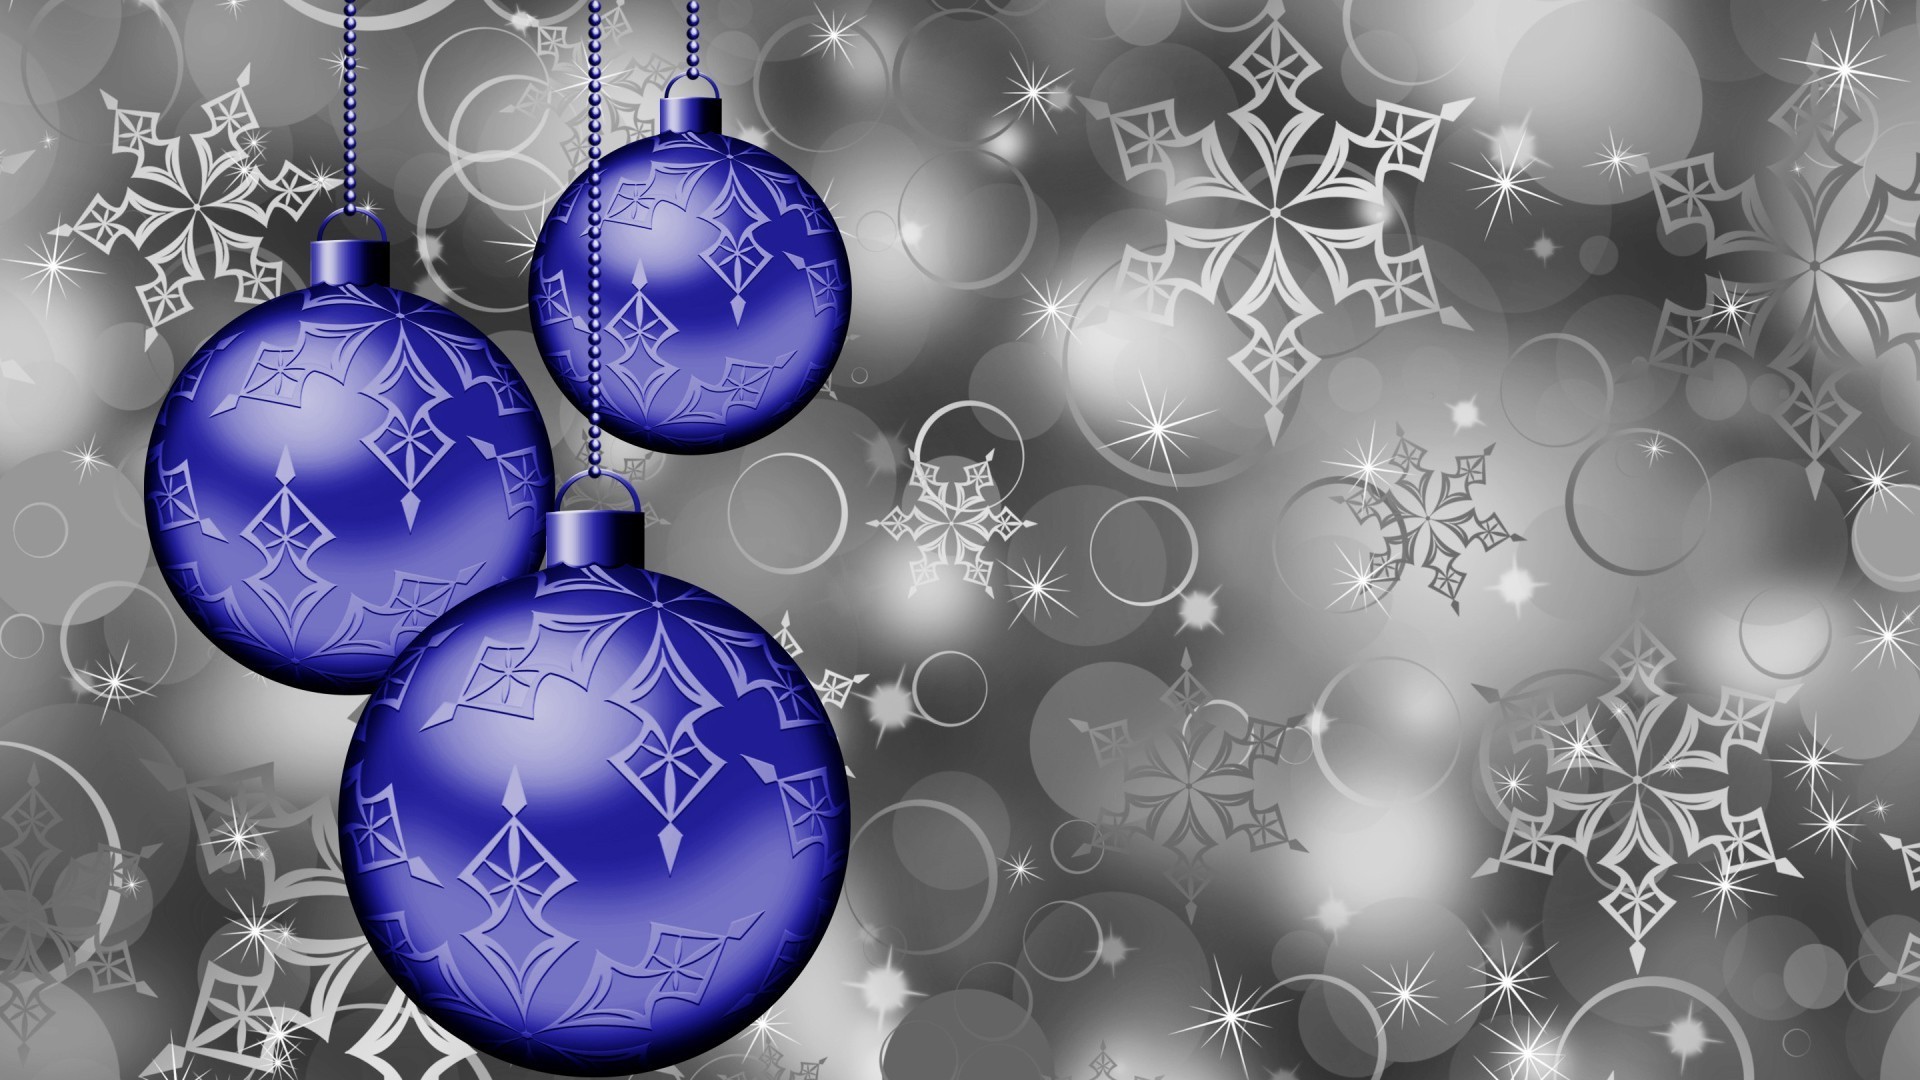 новый год рождество зима мяч снежинка мерри сфера украшения иллюстрация праздник снег светит висит вектор блестят дизайн витиеватый карта сезон графический дизайн